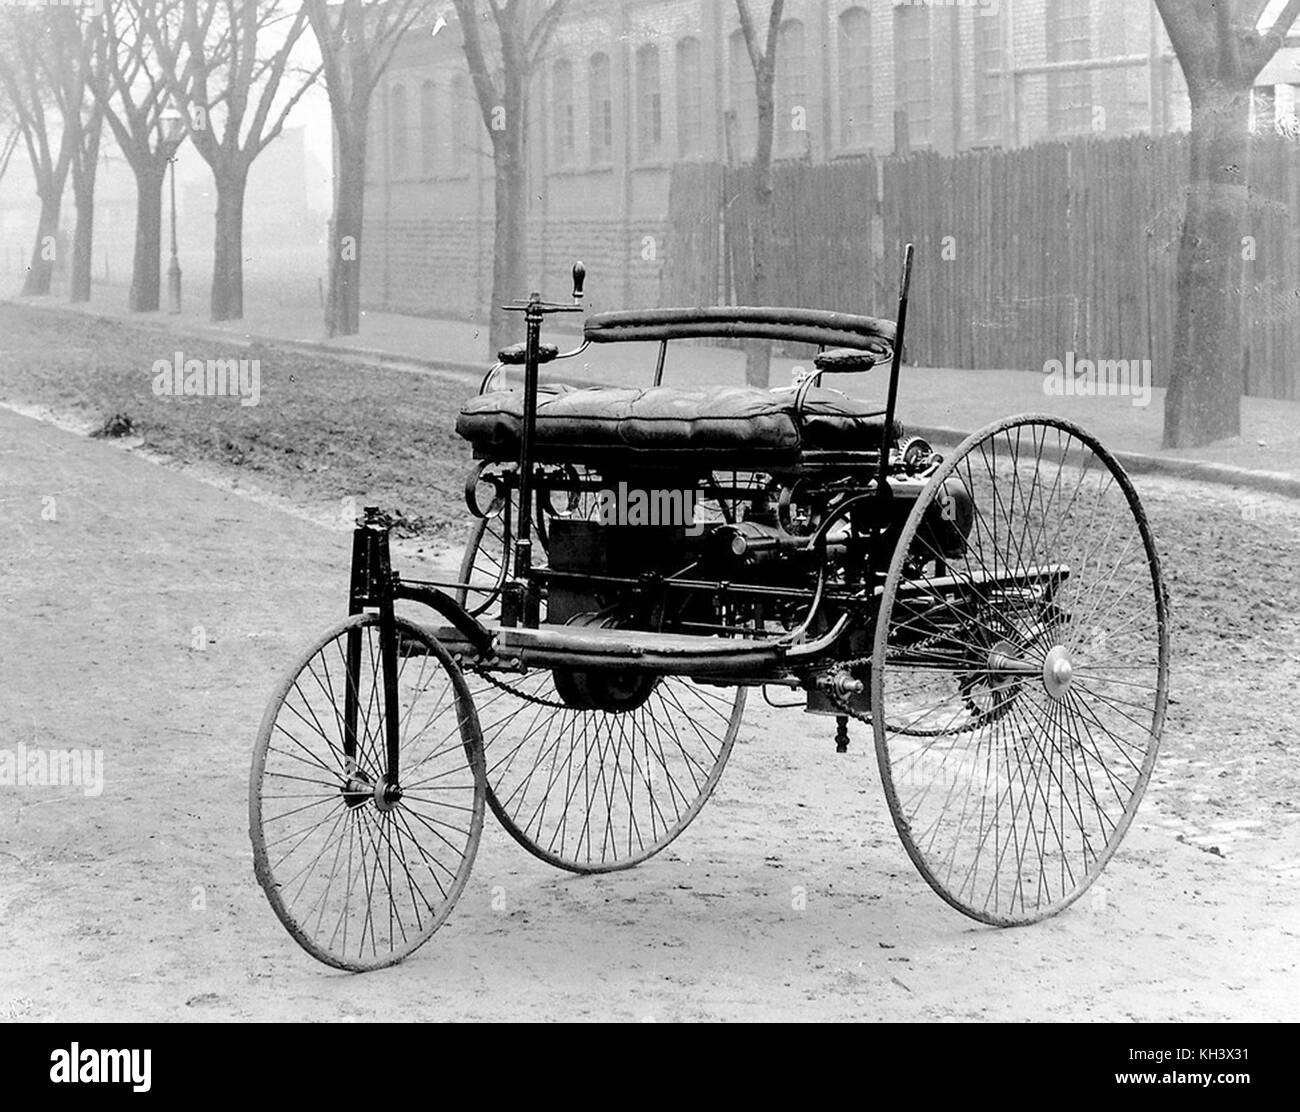 La Benz Patent Motorwagen construite en 1885, la première automobile au monde. Banque D'Images